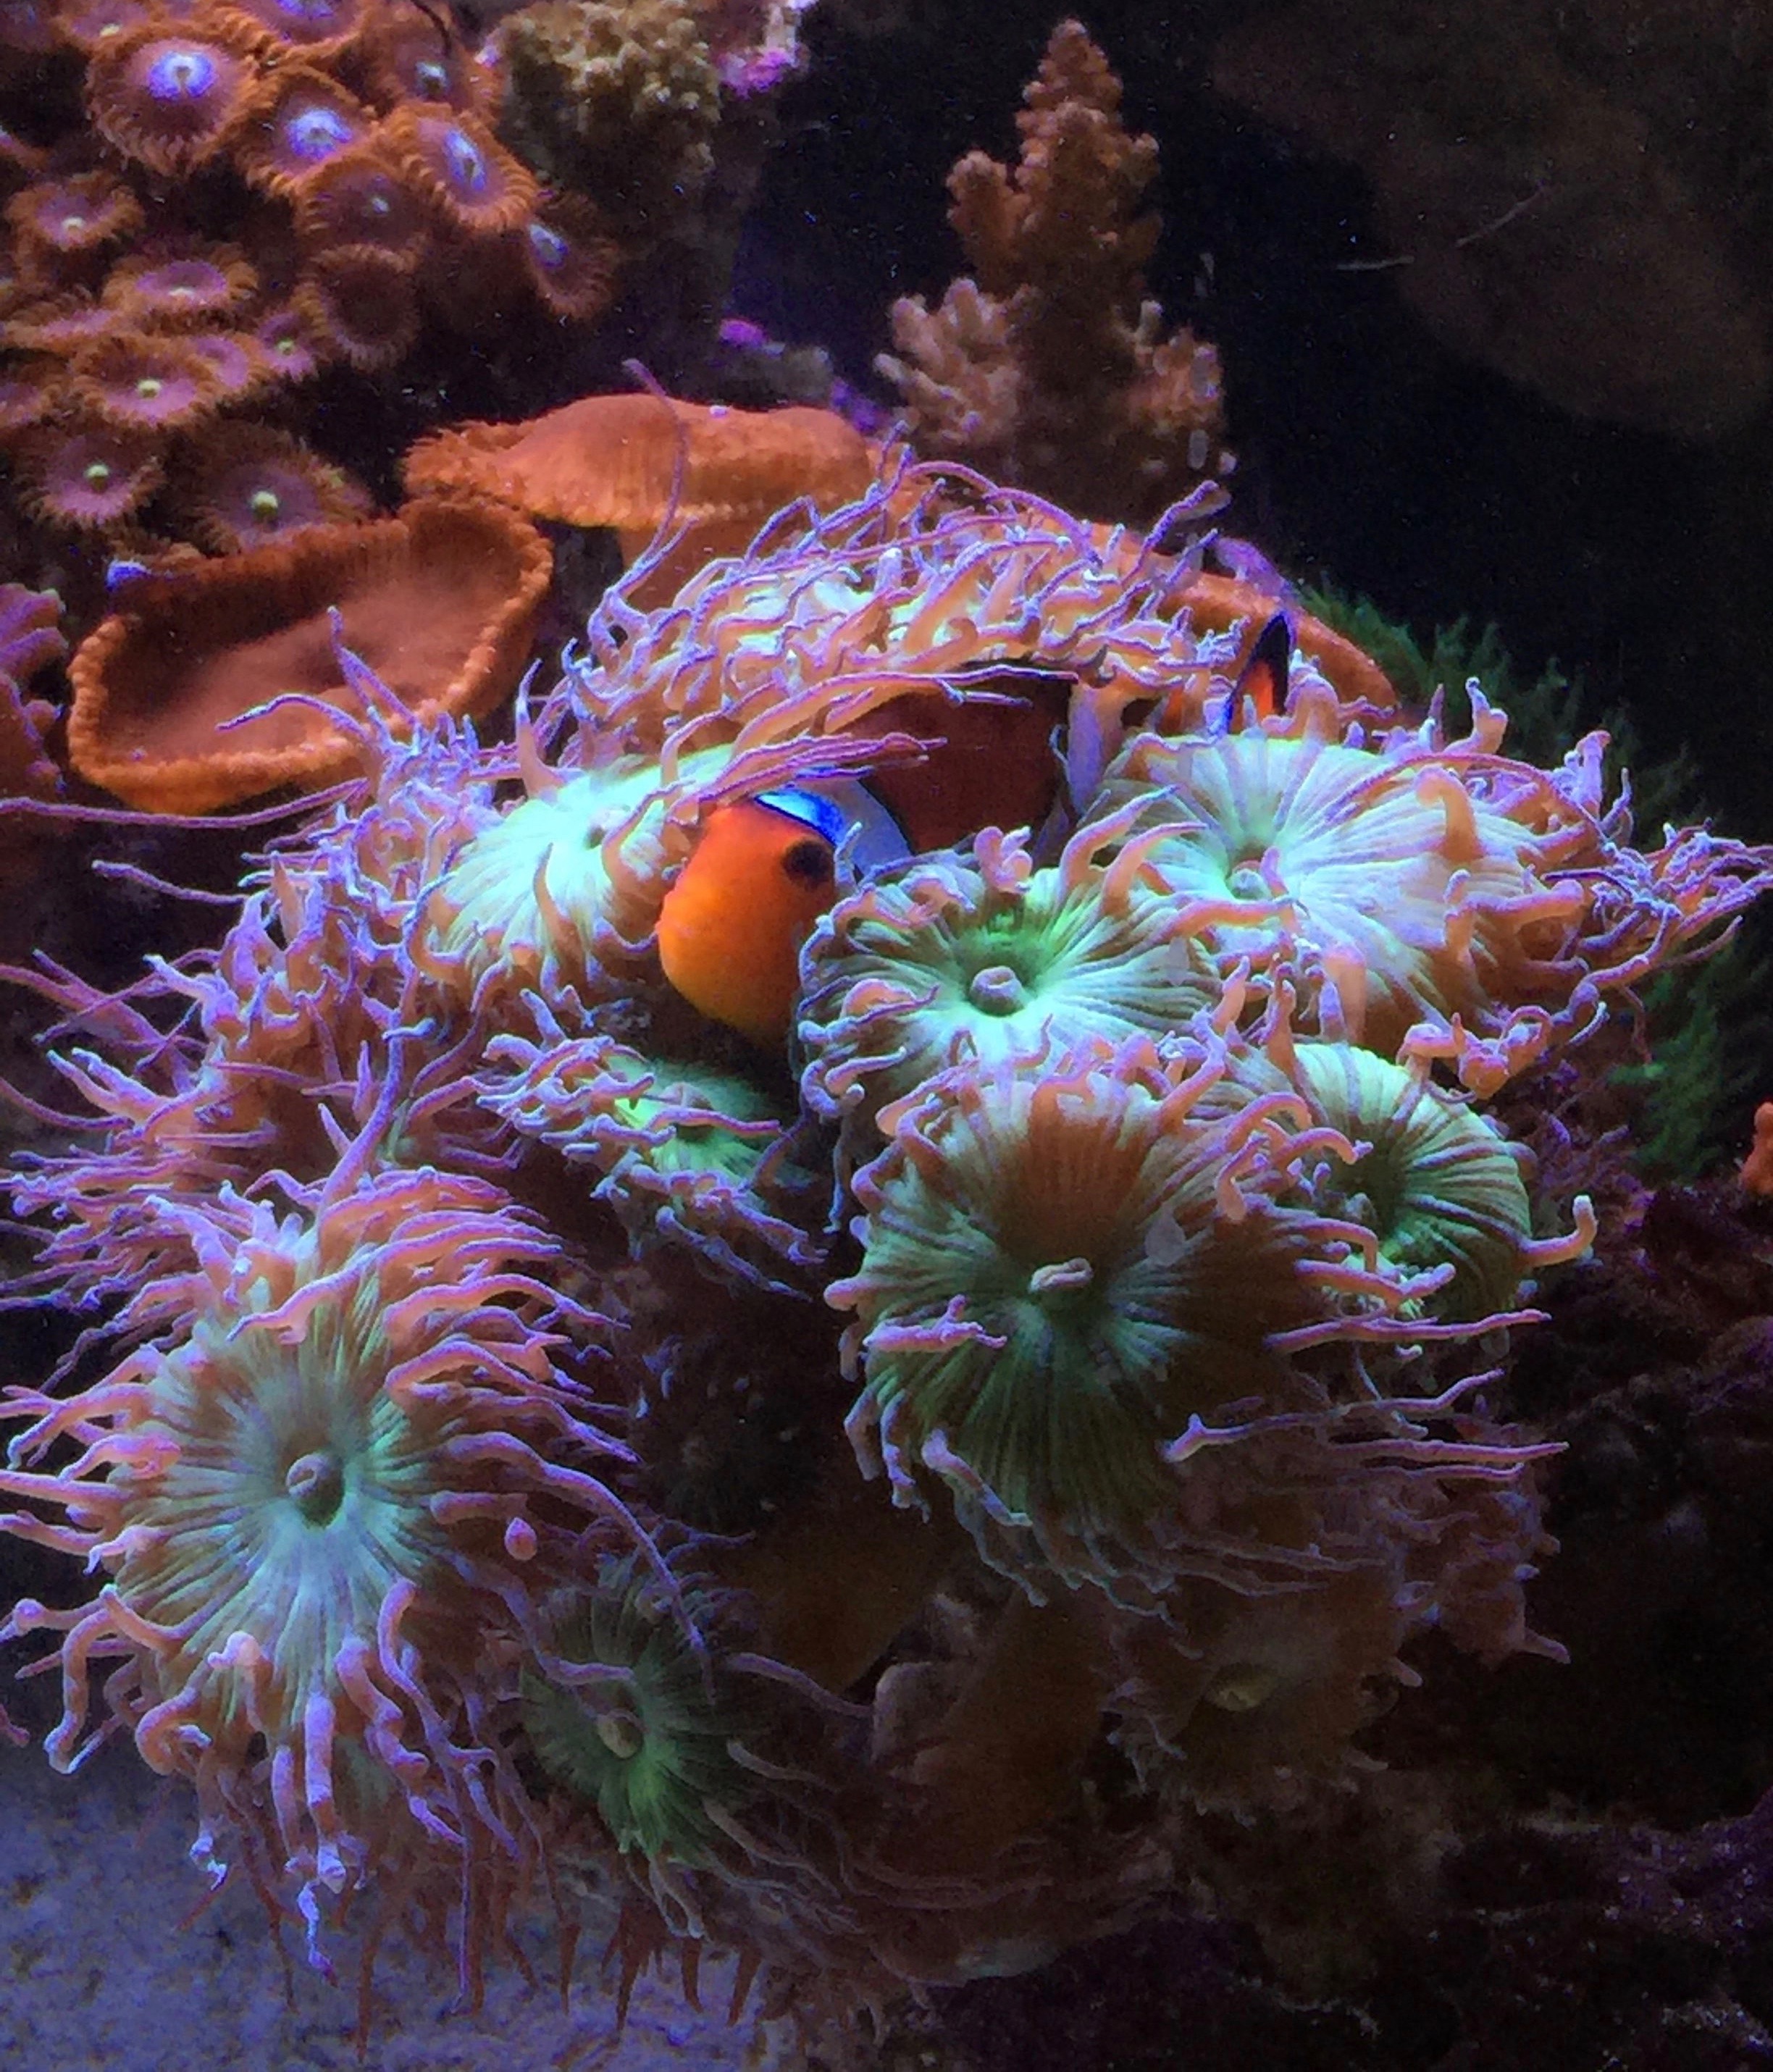 Nemo in the Duncan.